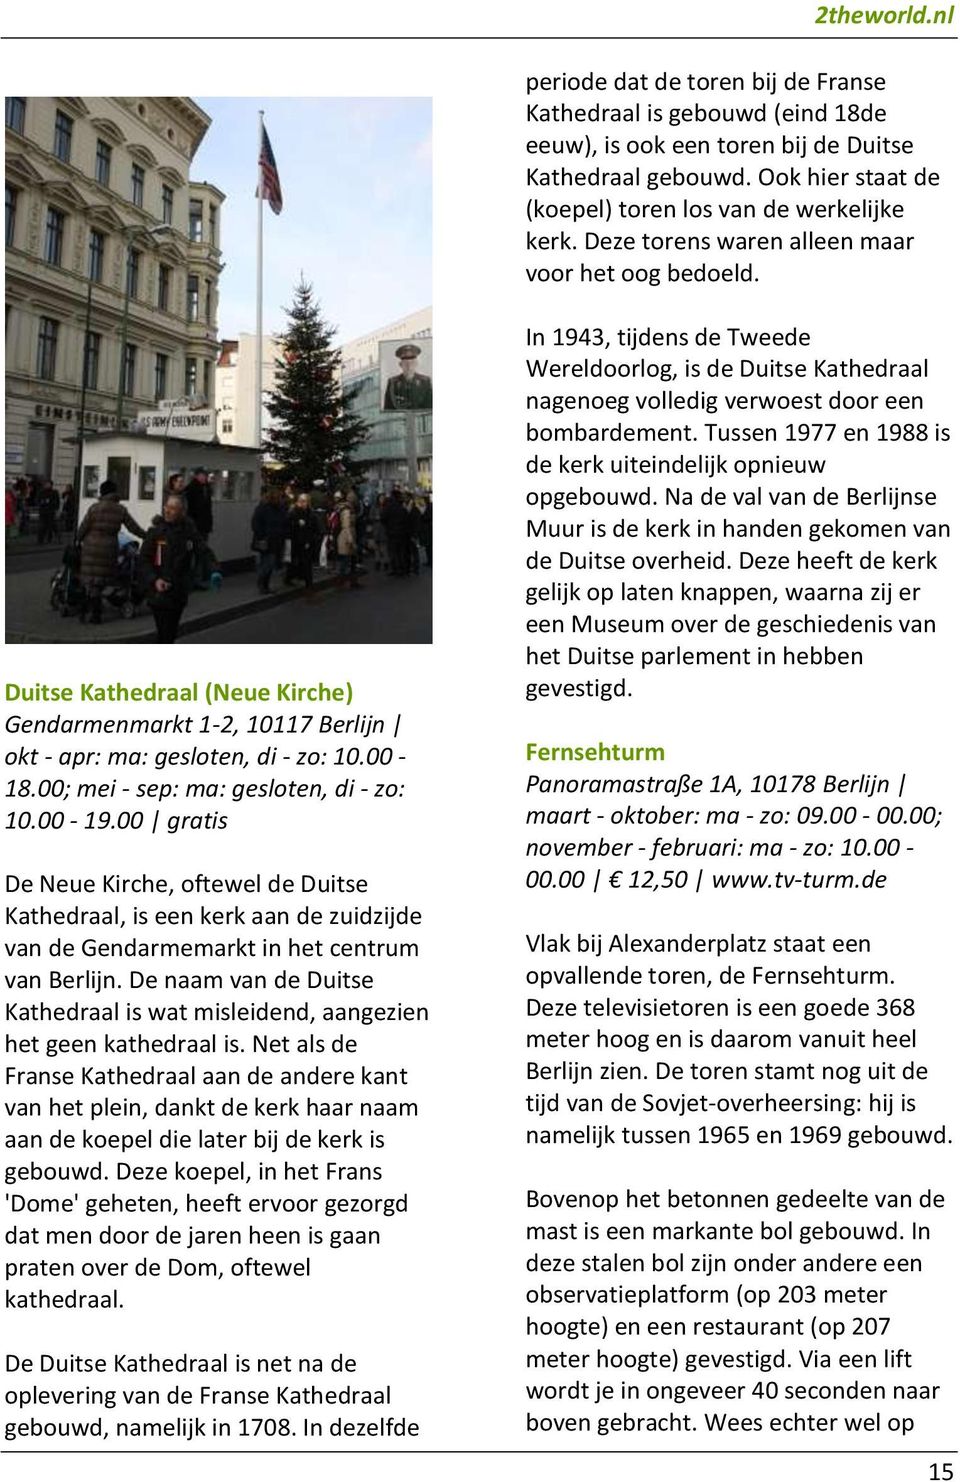 00; mei - sep: ma: gesloten, di - zo: 10.00-19.00 gratis De Neue Kirche, oftewel de Duitse Kathedraal, is een kerk aan de zuidzijde van de Gendarmemarkt in het centrum van Berlijn.